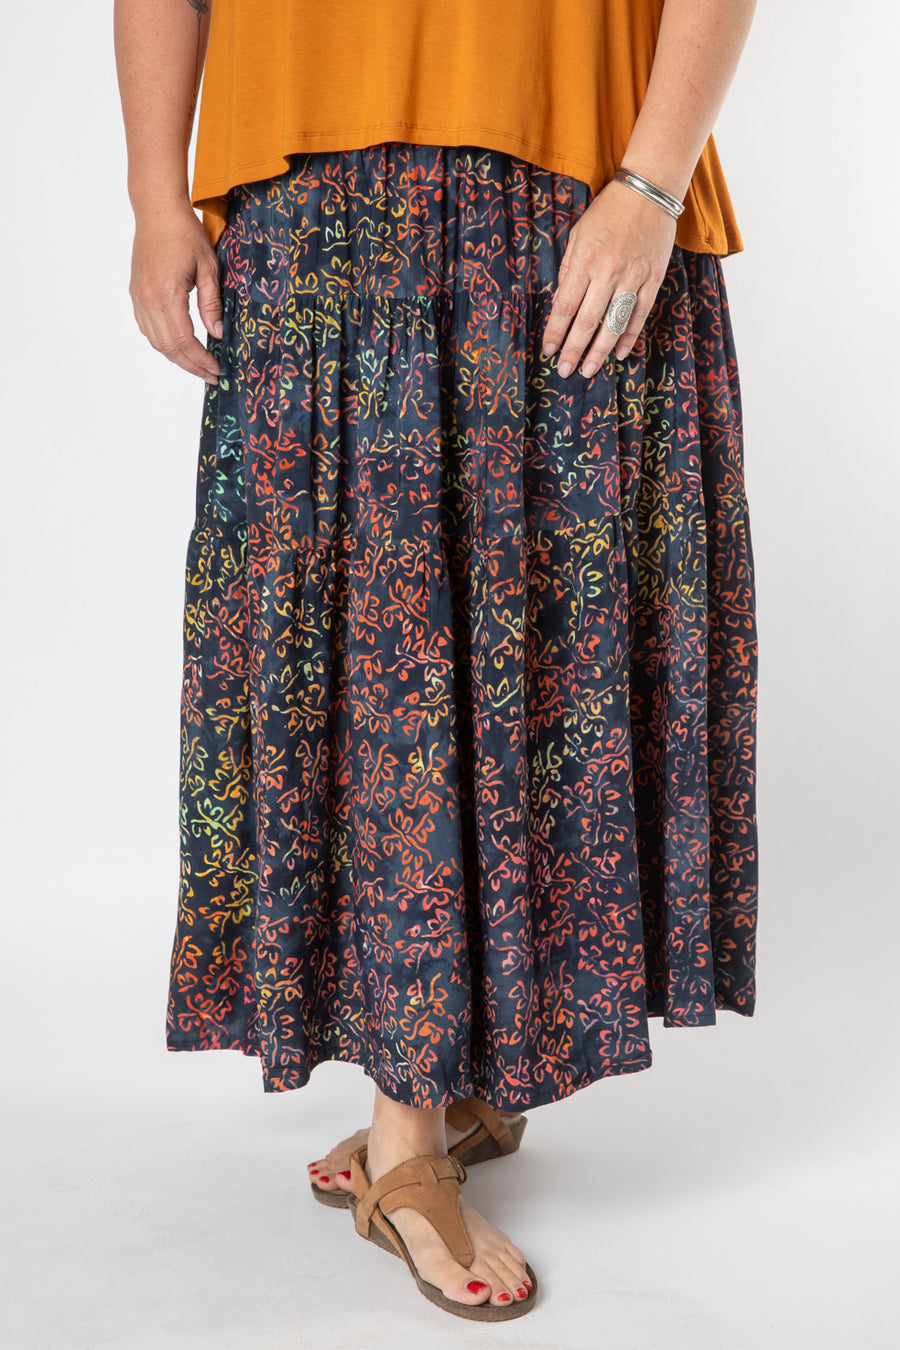 Batik Prairie Skirt